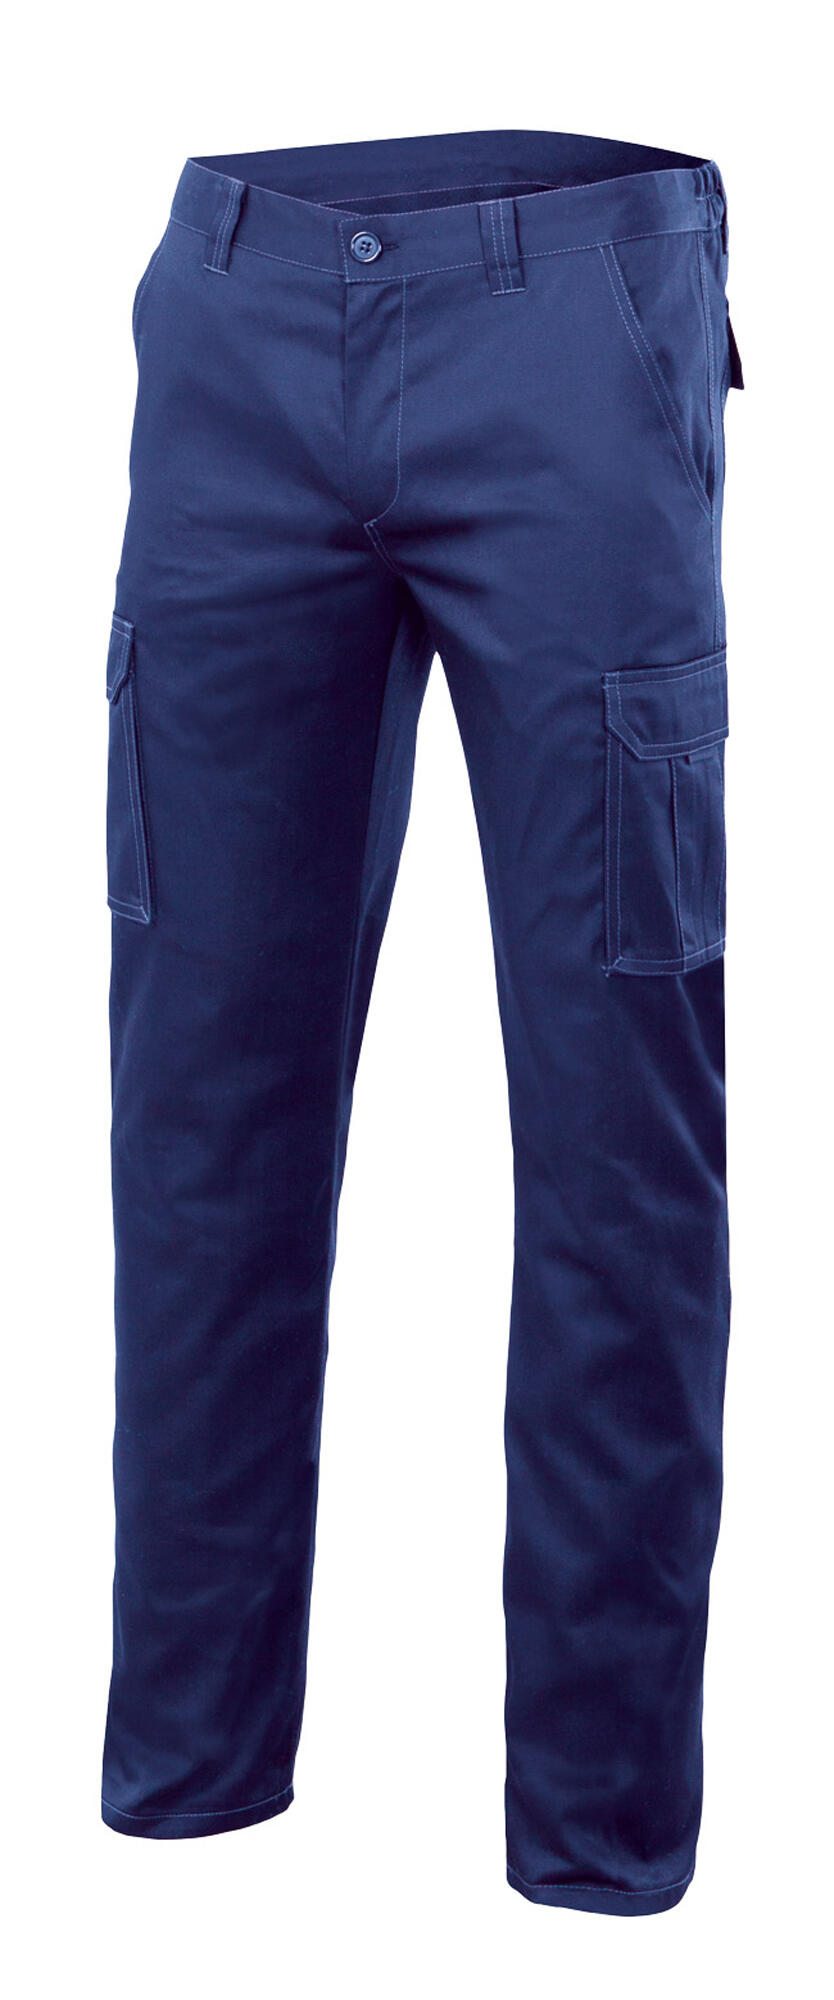 Pantalon de trabajo multibolsillo stretch azulina t48